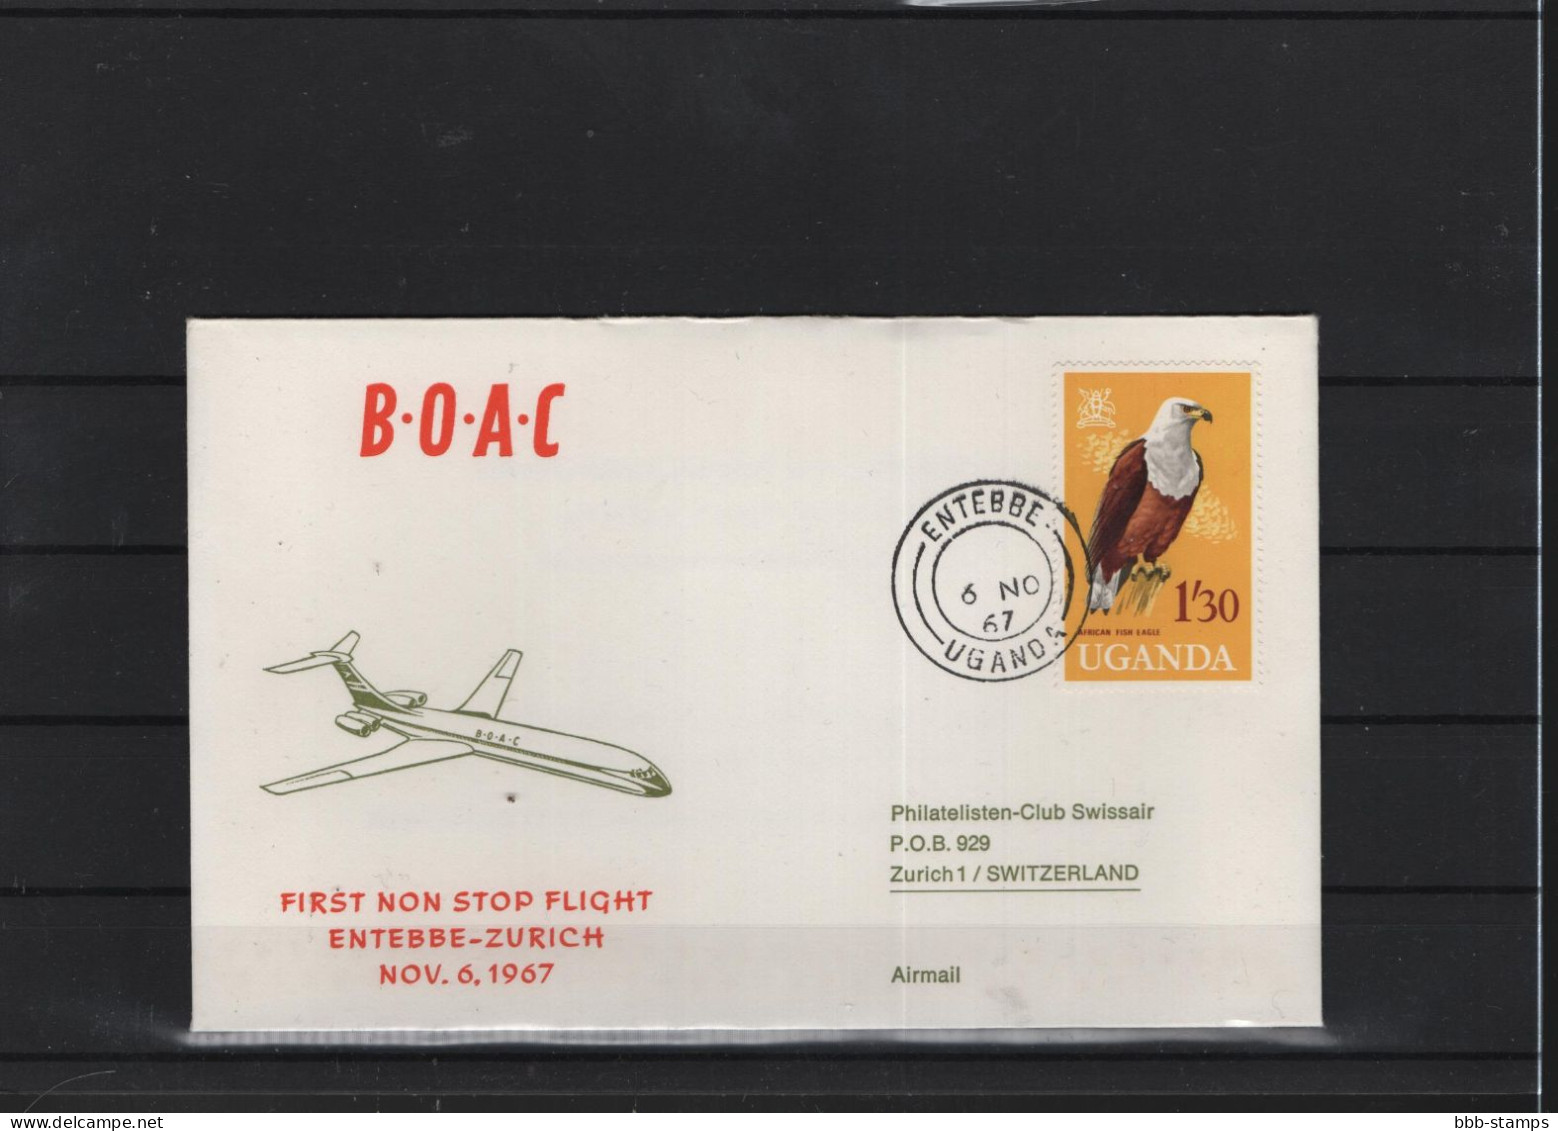 Schweiz Luftpost FFC BOAC 6.11.1966 Entebbe - Zürich - Primeros Vuelos